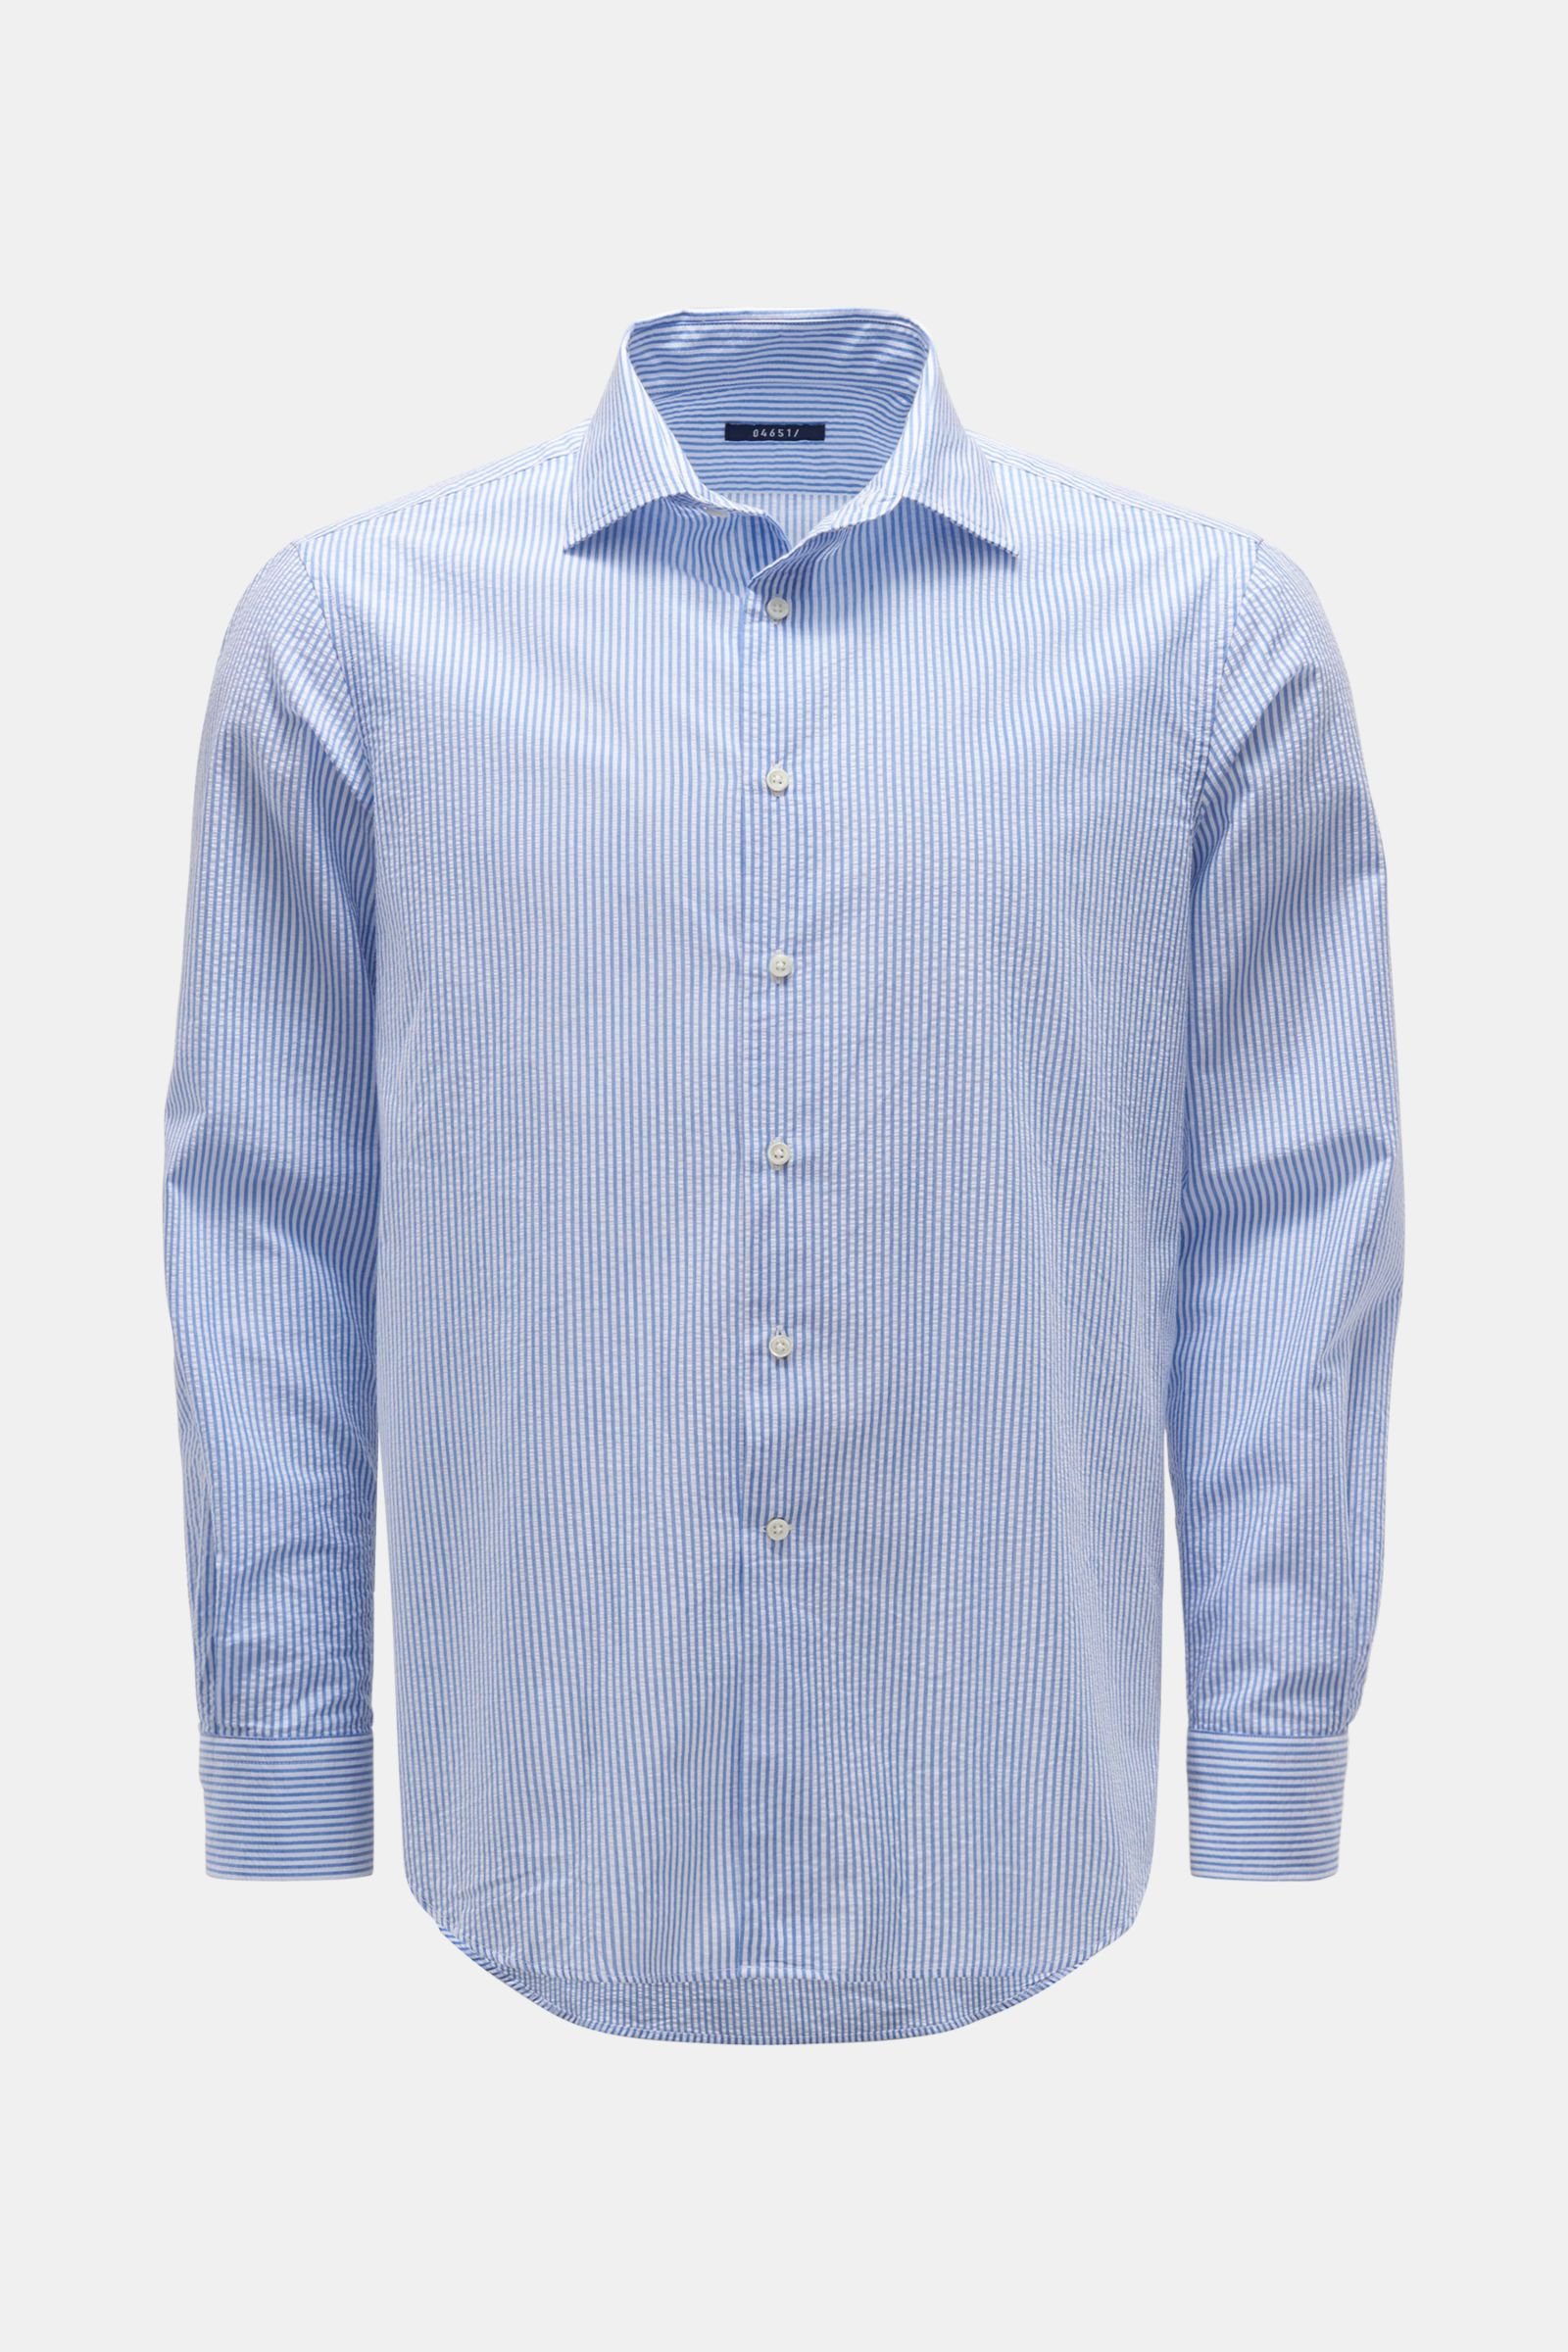 Seersucker shirt 'Seersucker Shirt' shark collar smoky blue/white striped